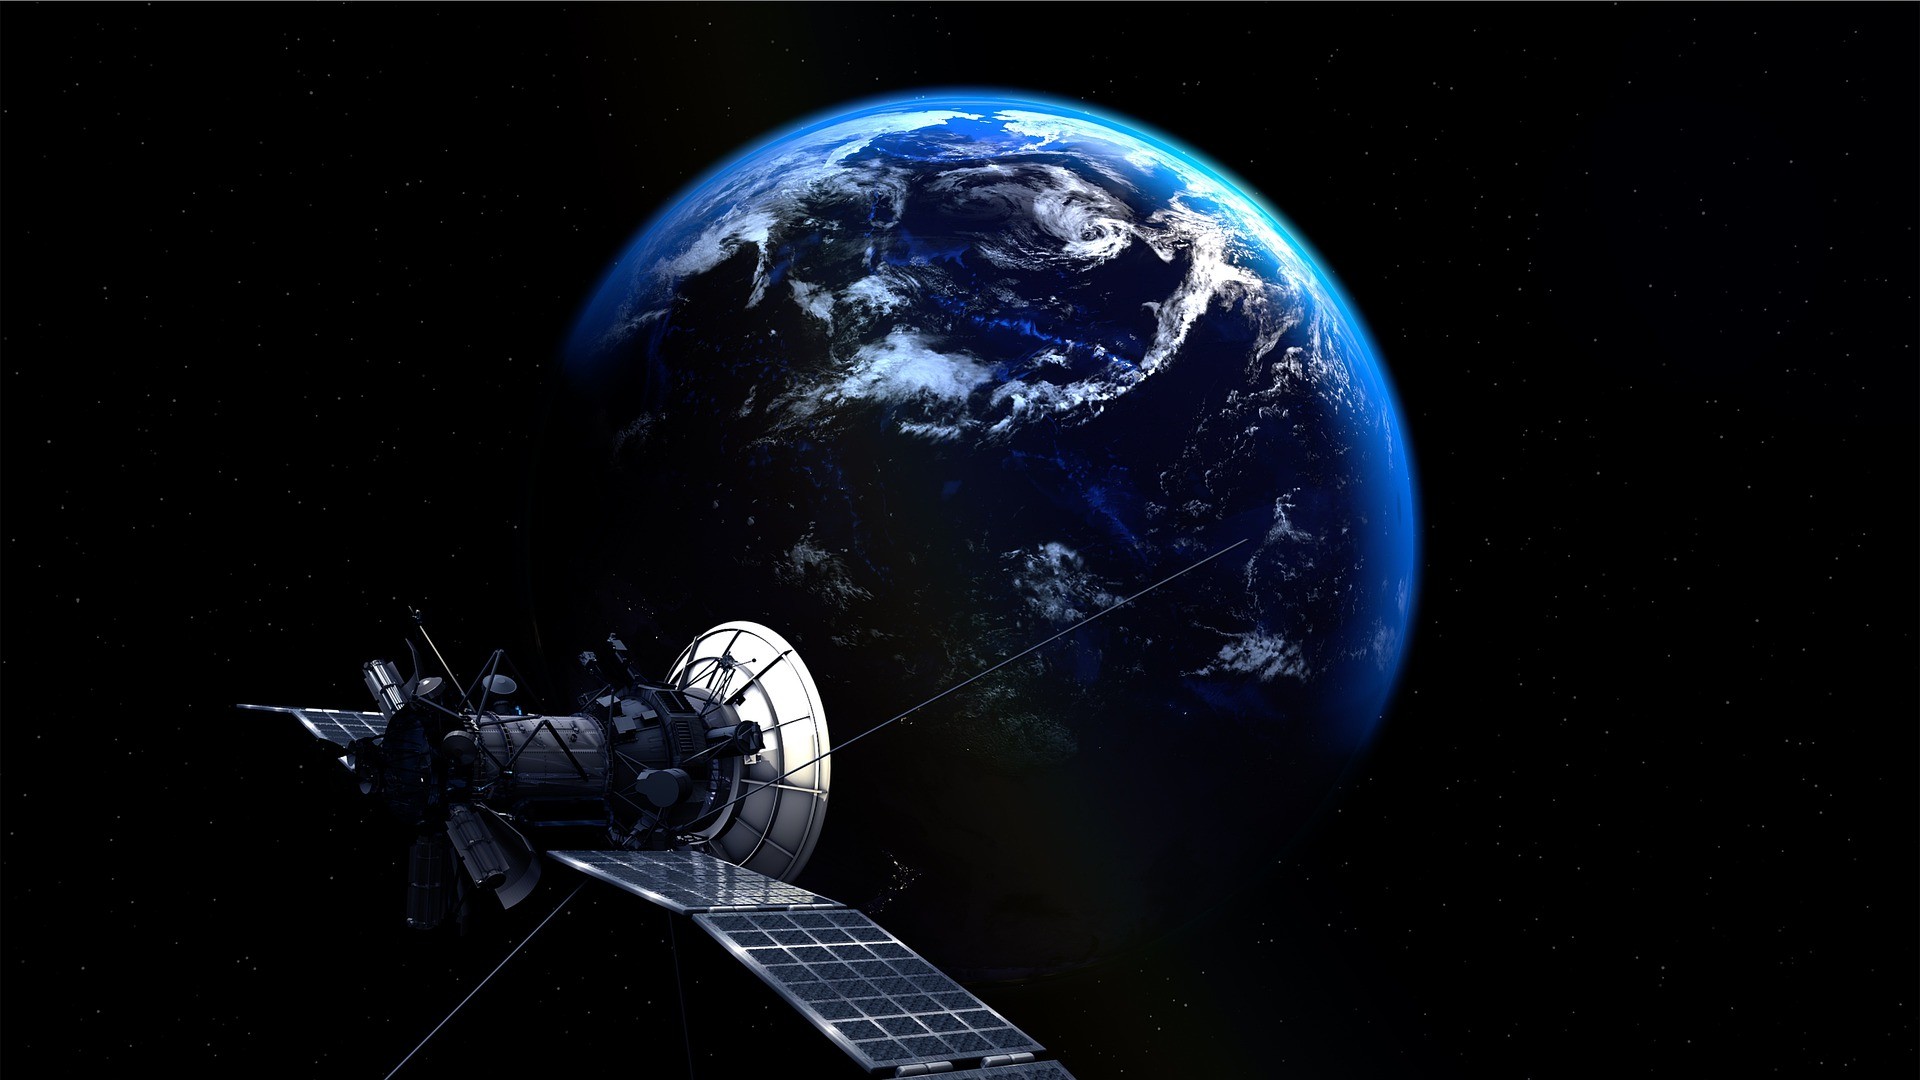 Brasil ainda avança em tecnologia de satélites (Foto: PIRO4D/Pixabay)